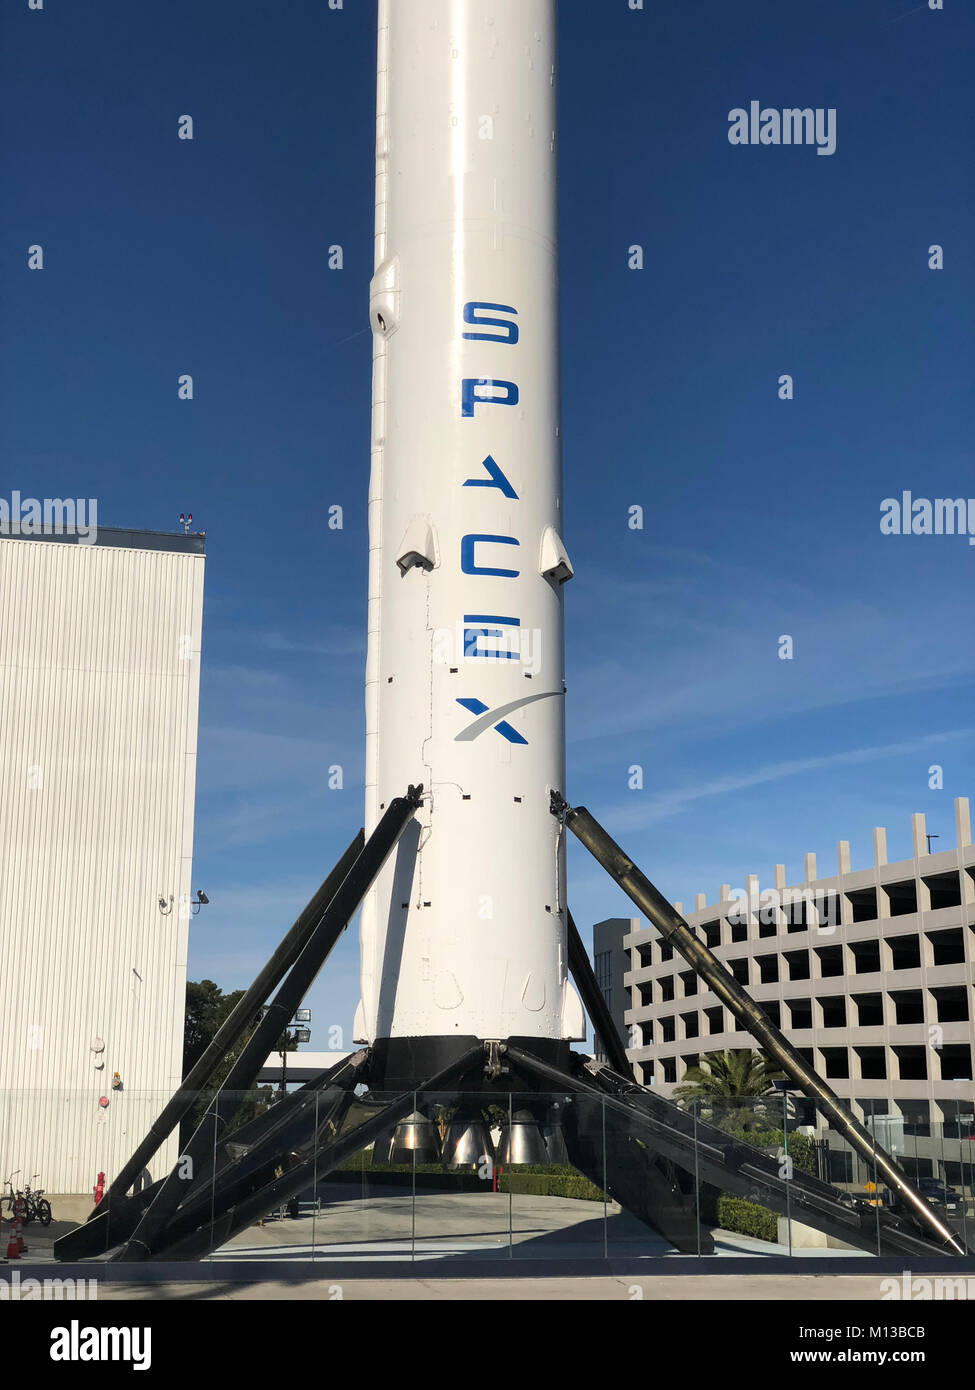 Falcon 9 cohetes SpaceX en frente de la sede, situada en Hawthorne, California el 13 de enero de 2018. Las dos etapas de órbita mediana elevación del vehículo de lanzamiento puede levantar cargas de hasta 22,800 kg (50,300 lb) en la órbita baja de la tierra. - Sin cable SERVICIO - Foto: Christoph Dernbach/dpa Foto de stock